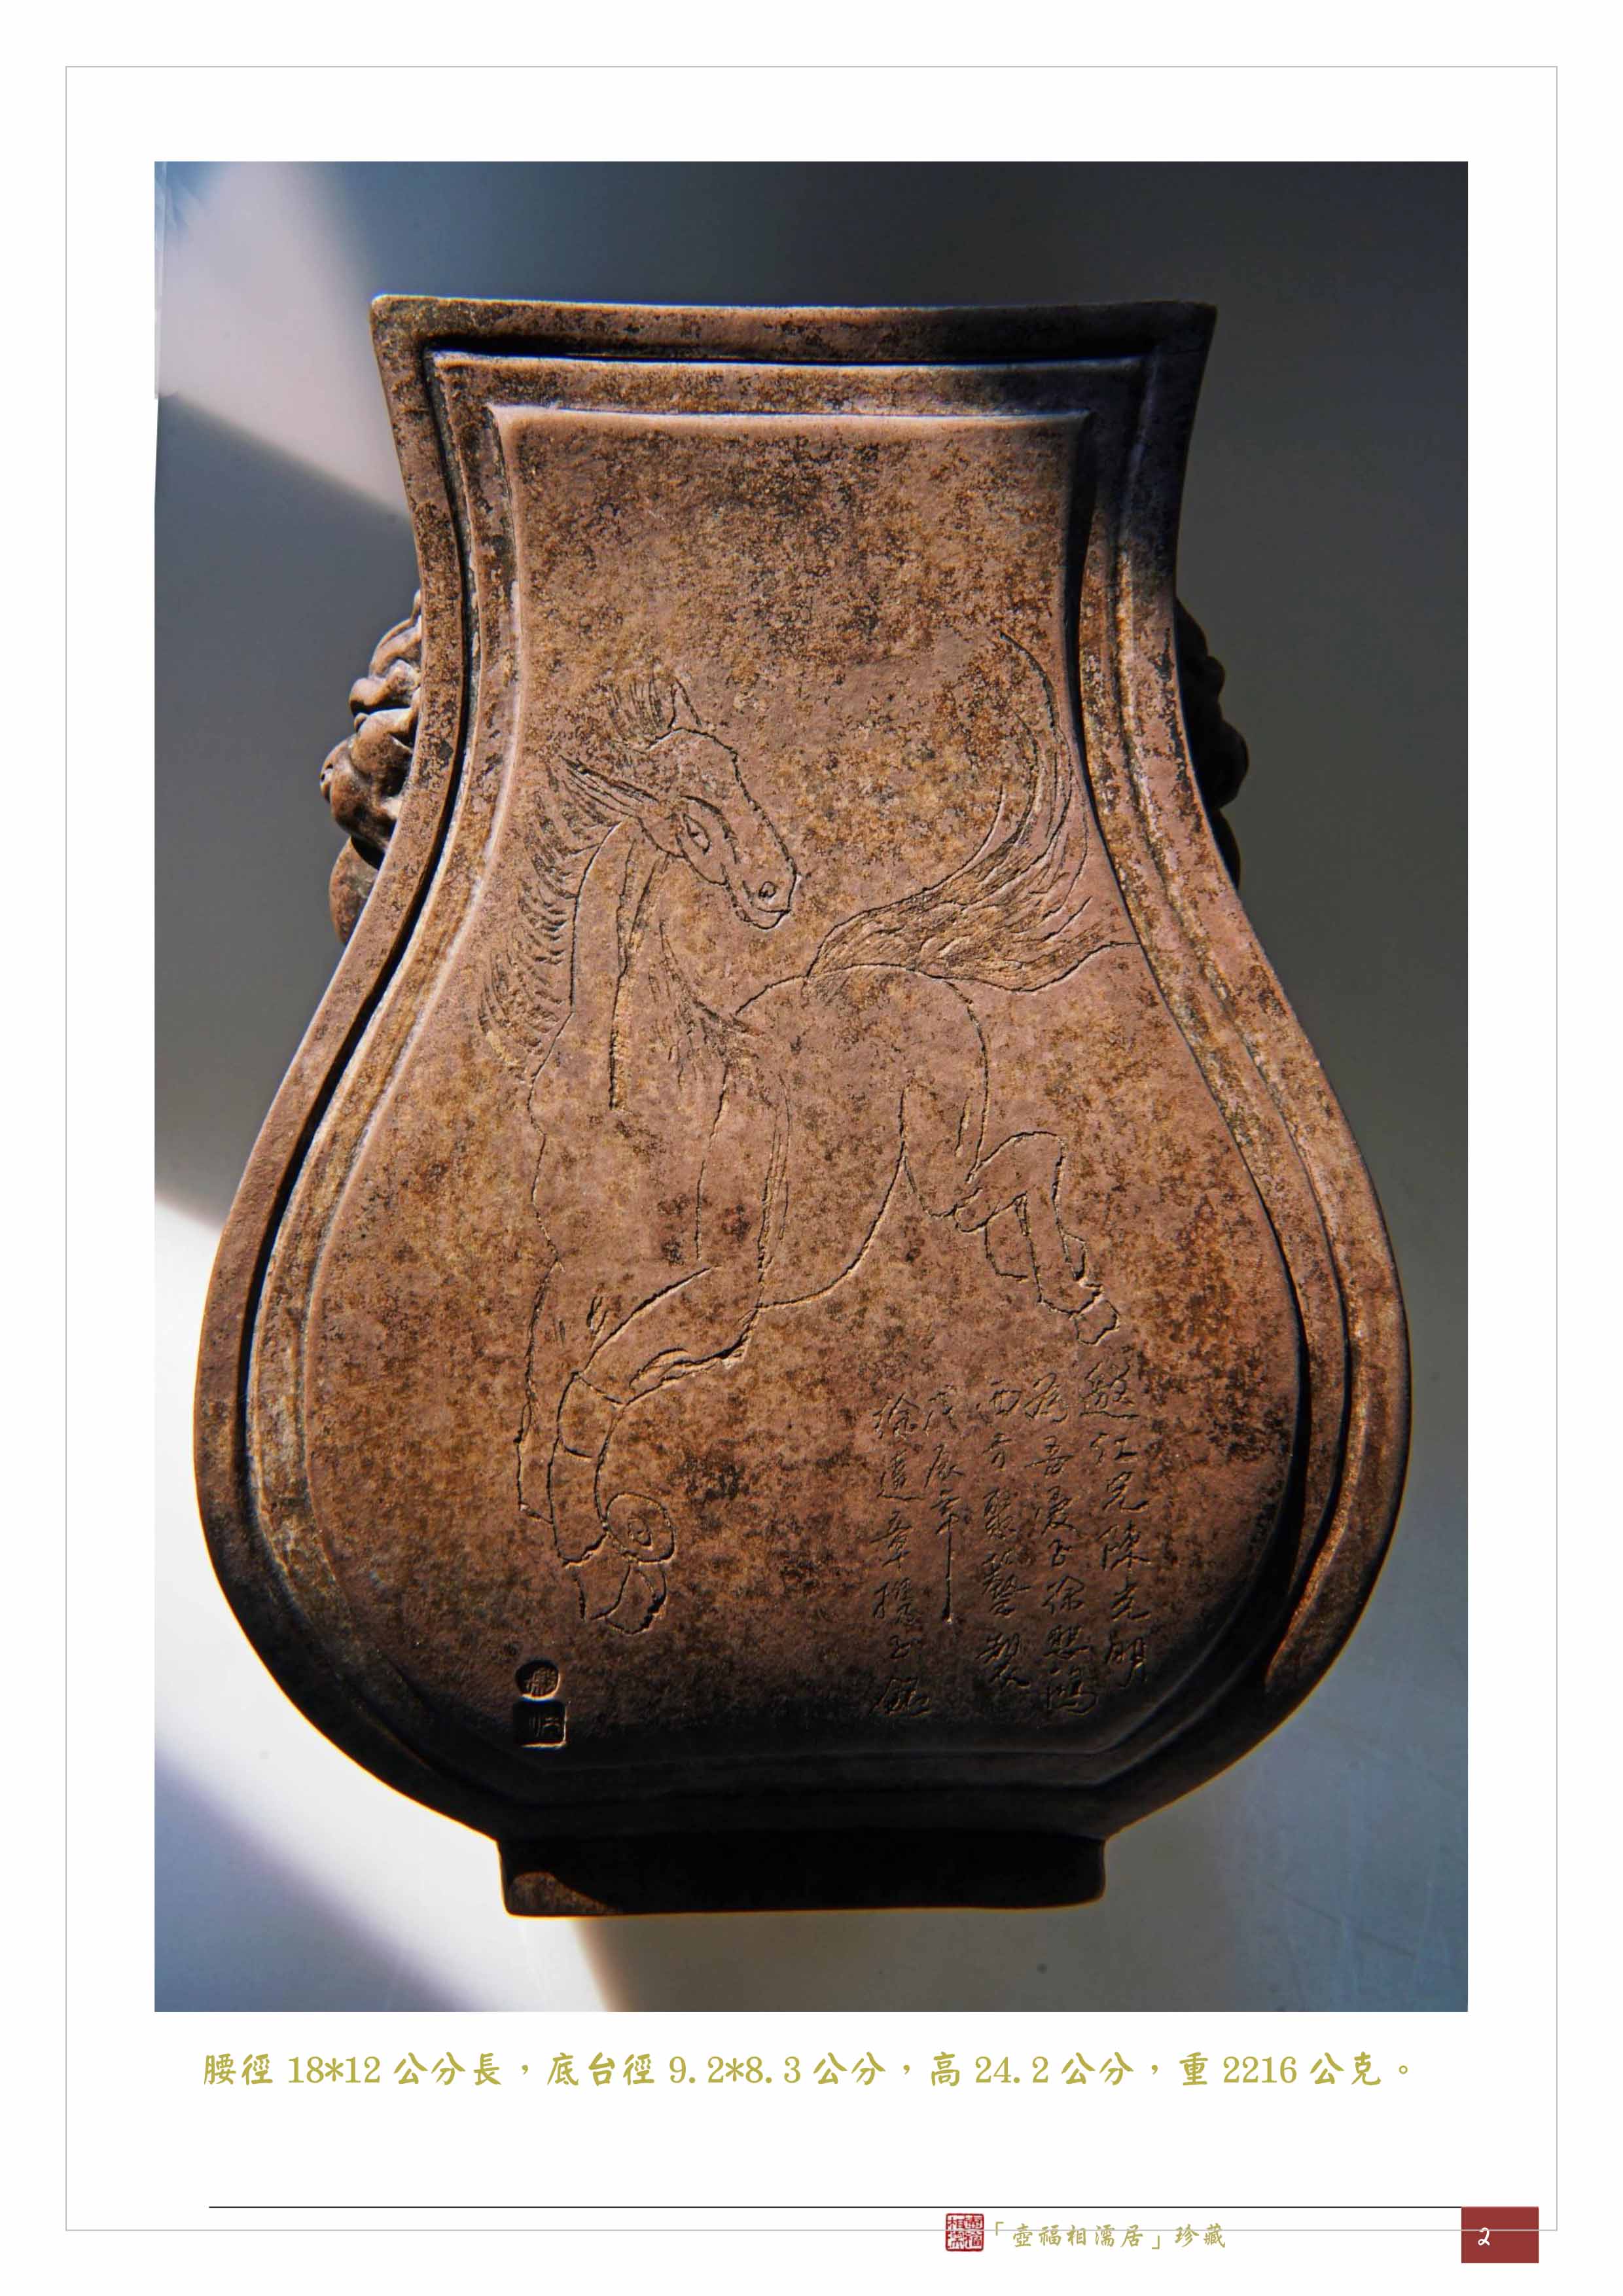 お見舞い 紫砂彫 清時代 駿馬紋鋪首銜環耳四方瓶 蔵出 中国古玩 古美術